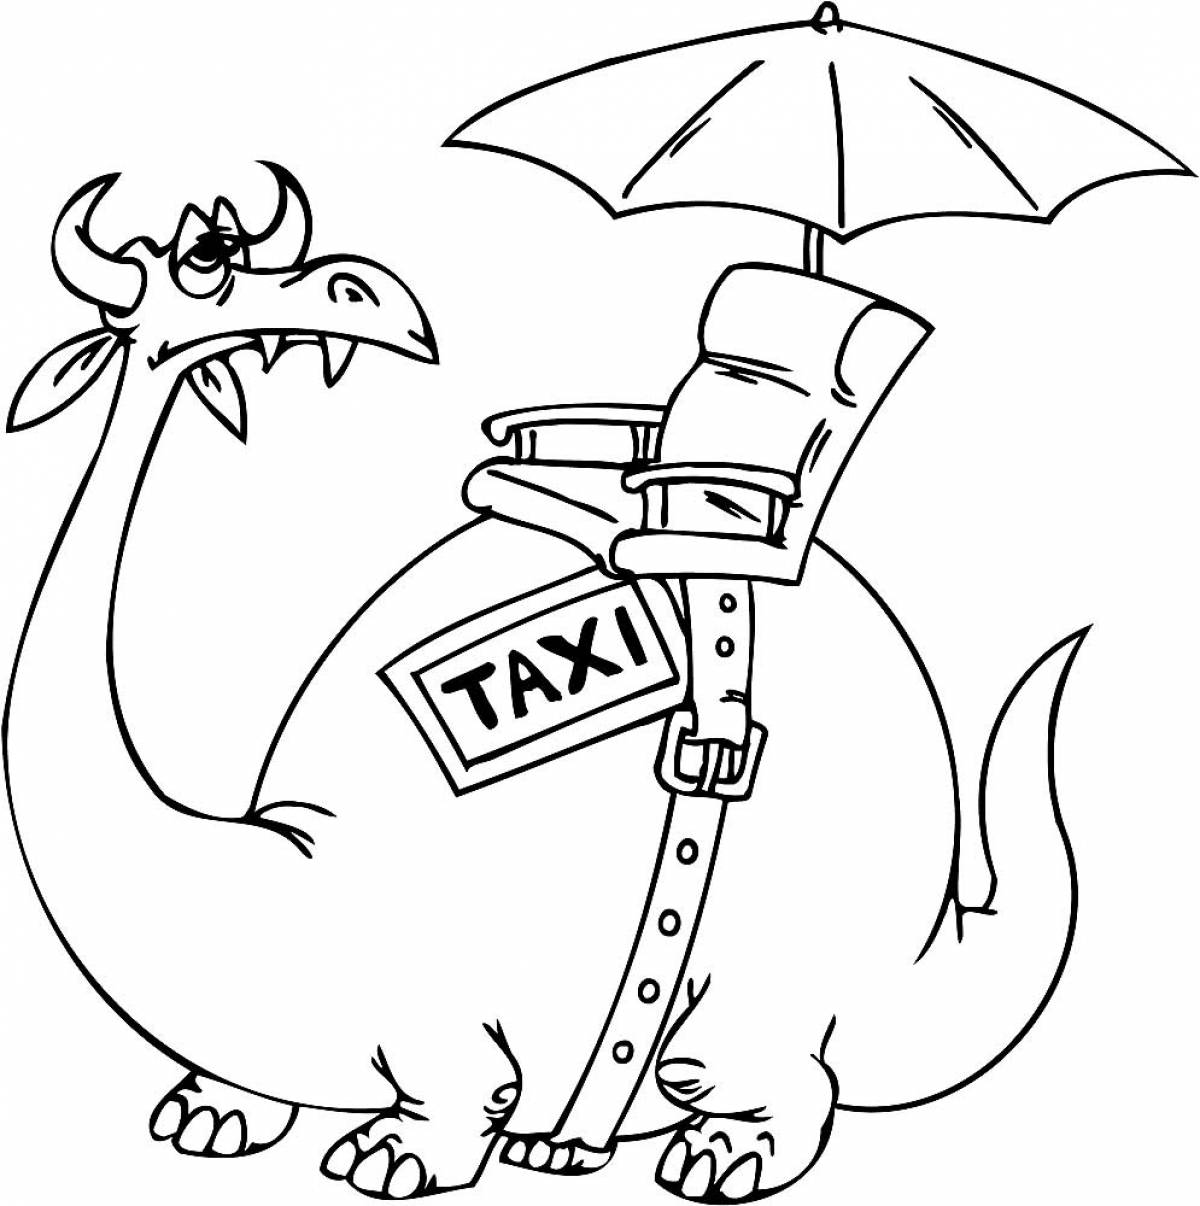 Taxi - dinosaur